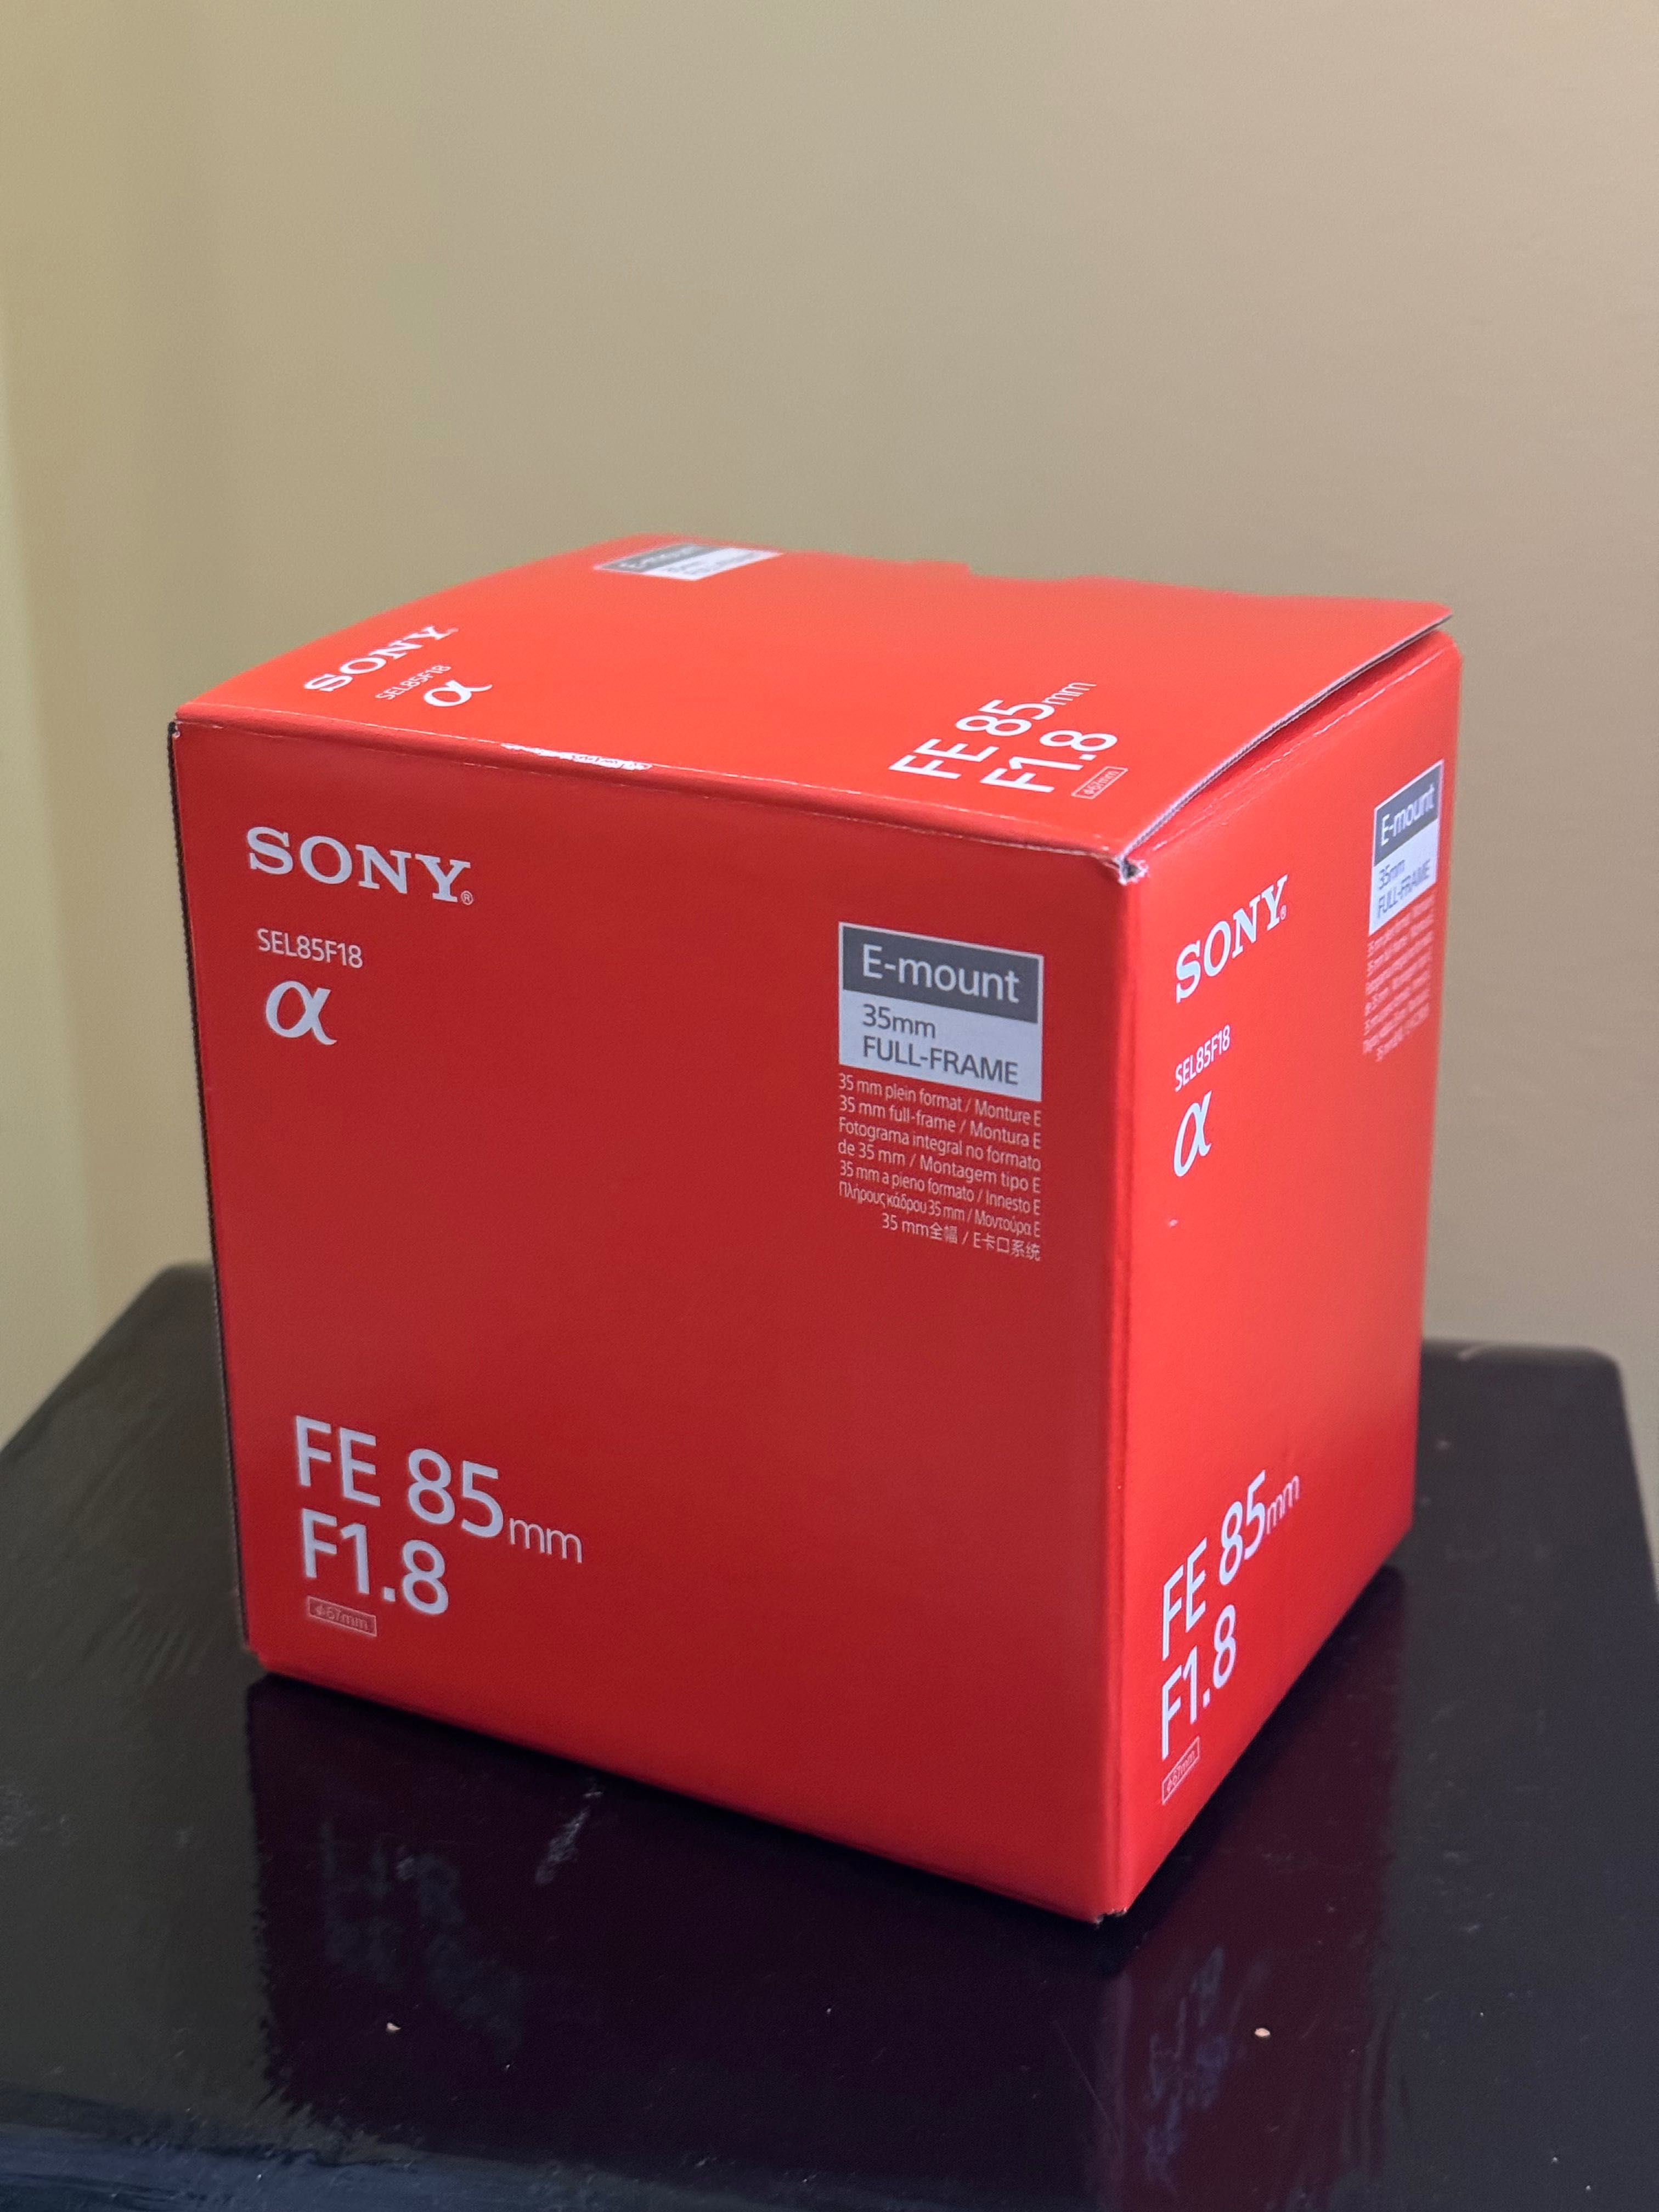 Okazja obiektyw Sony FE 85 mm f/1.8 Nowy